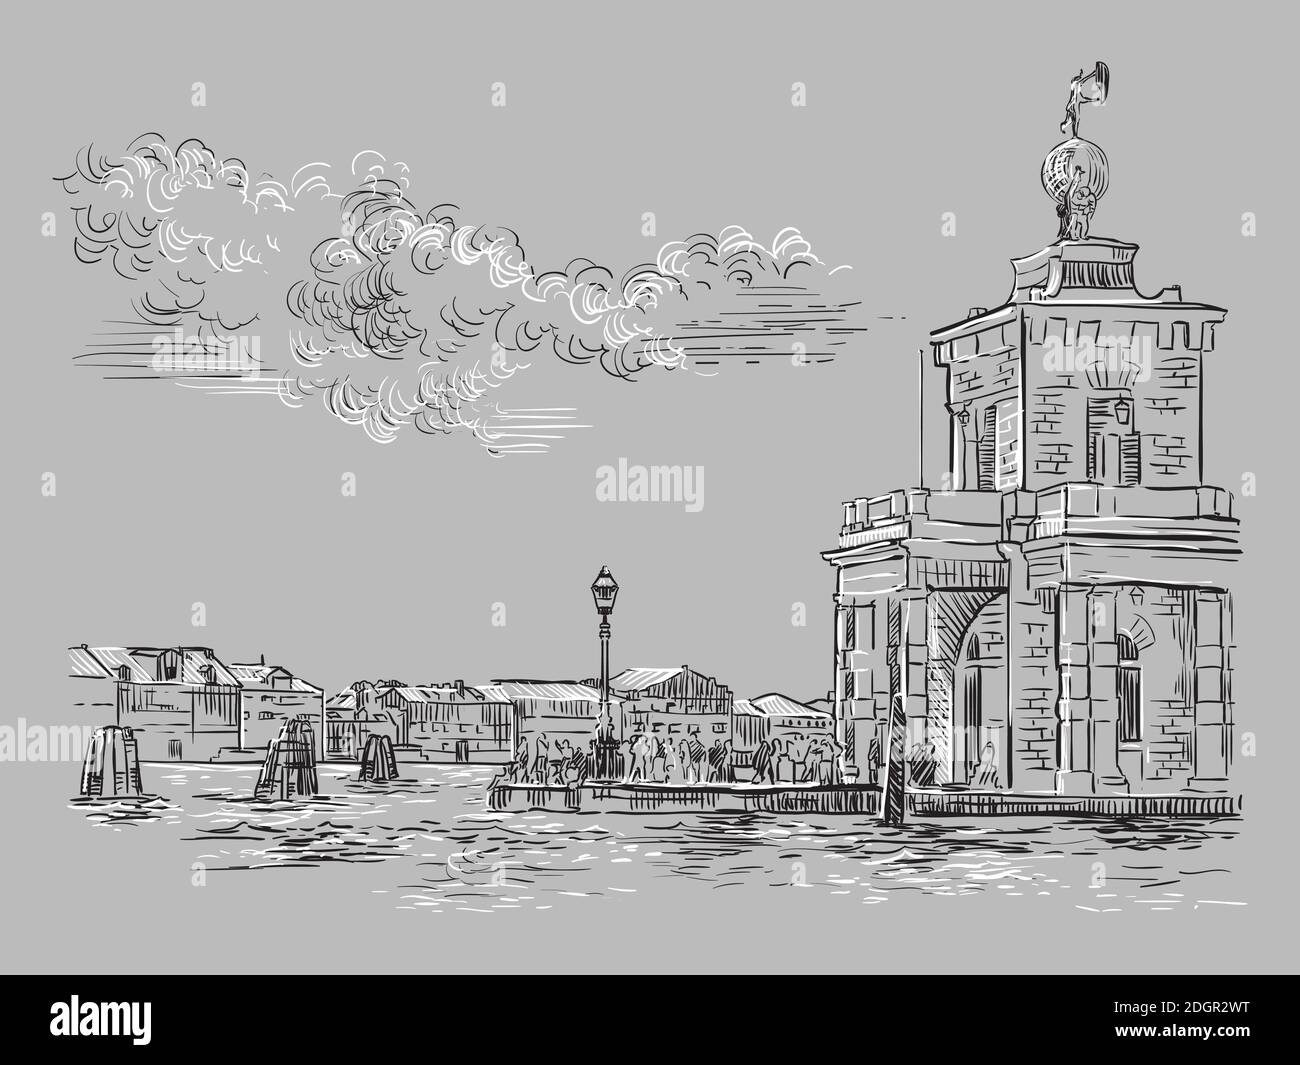 Dessin vectoriel à la main illustration de Della Dogane à Venise. Venise Skyline croquis dessiné à la main dans des couleurs monochromes isolées sur fond gris. Illustration de Vecteur